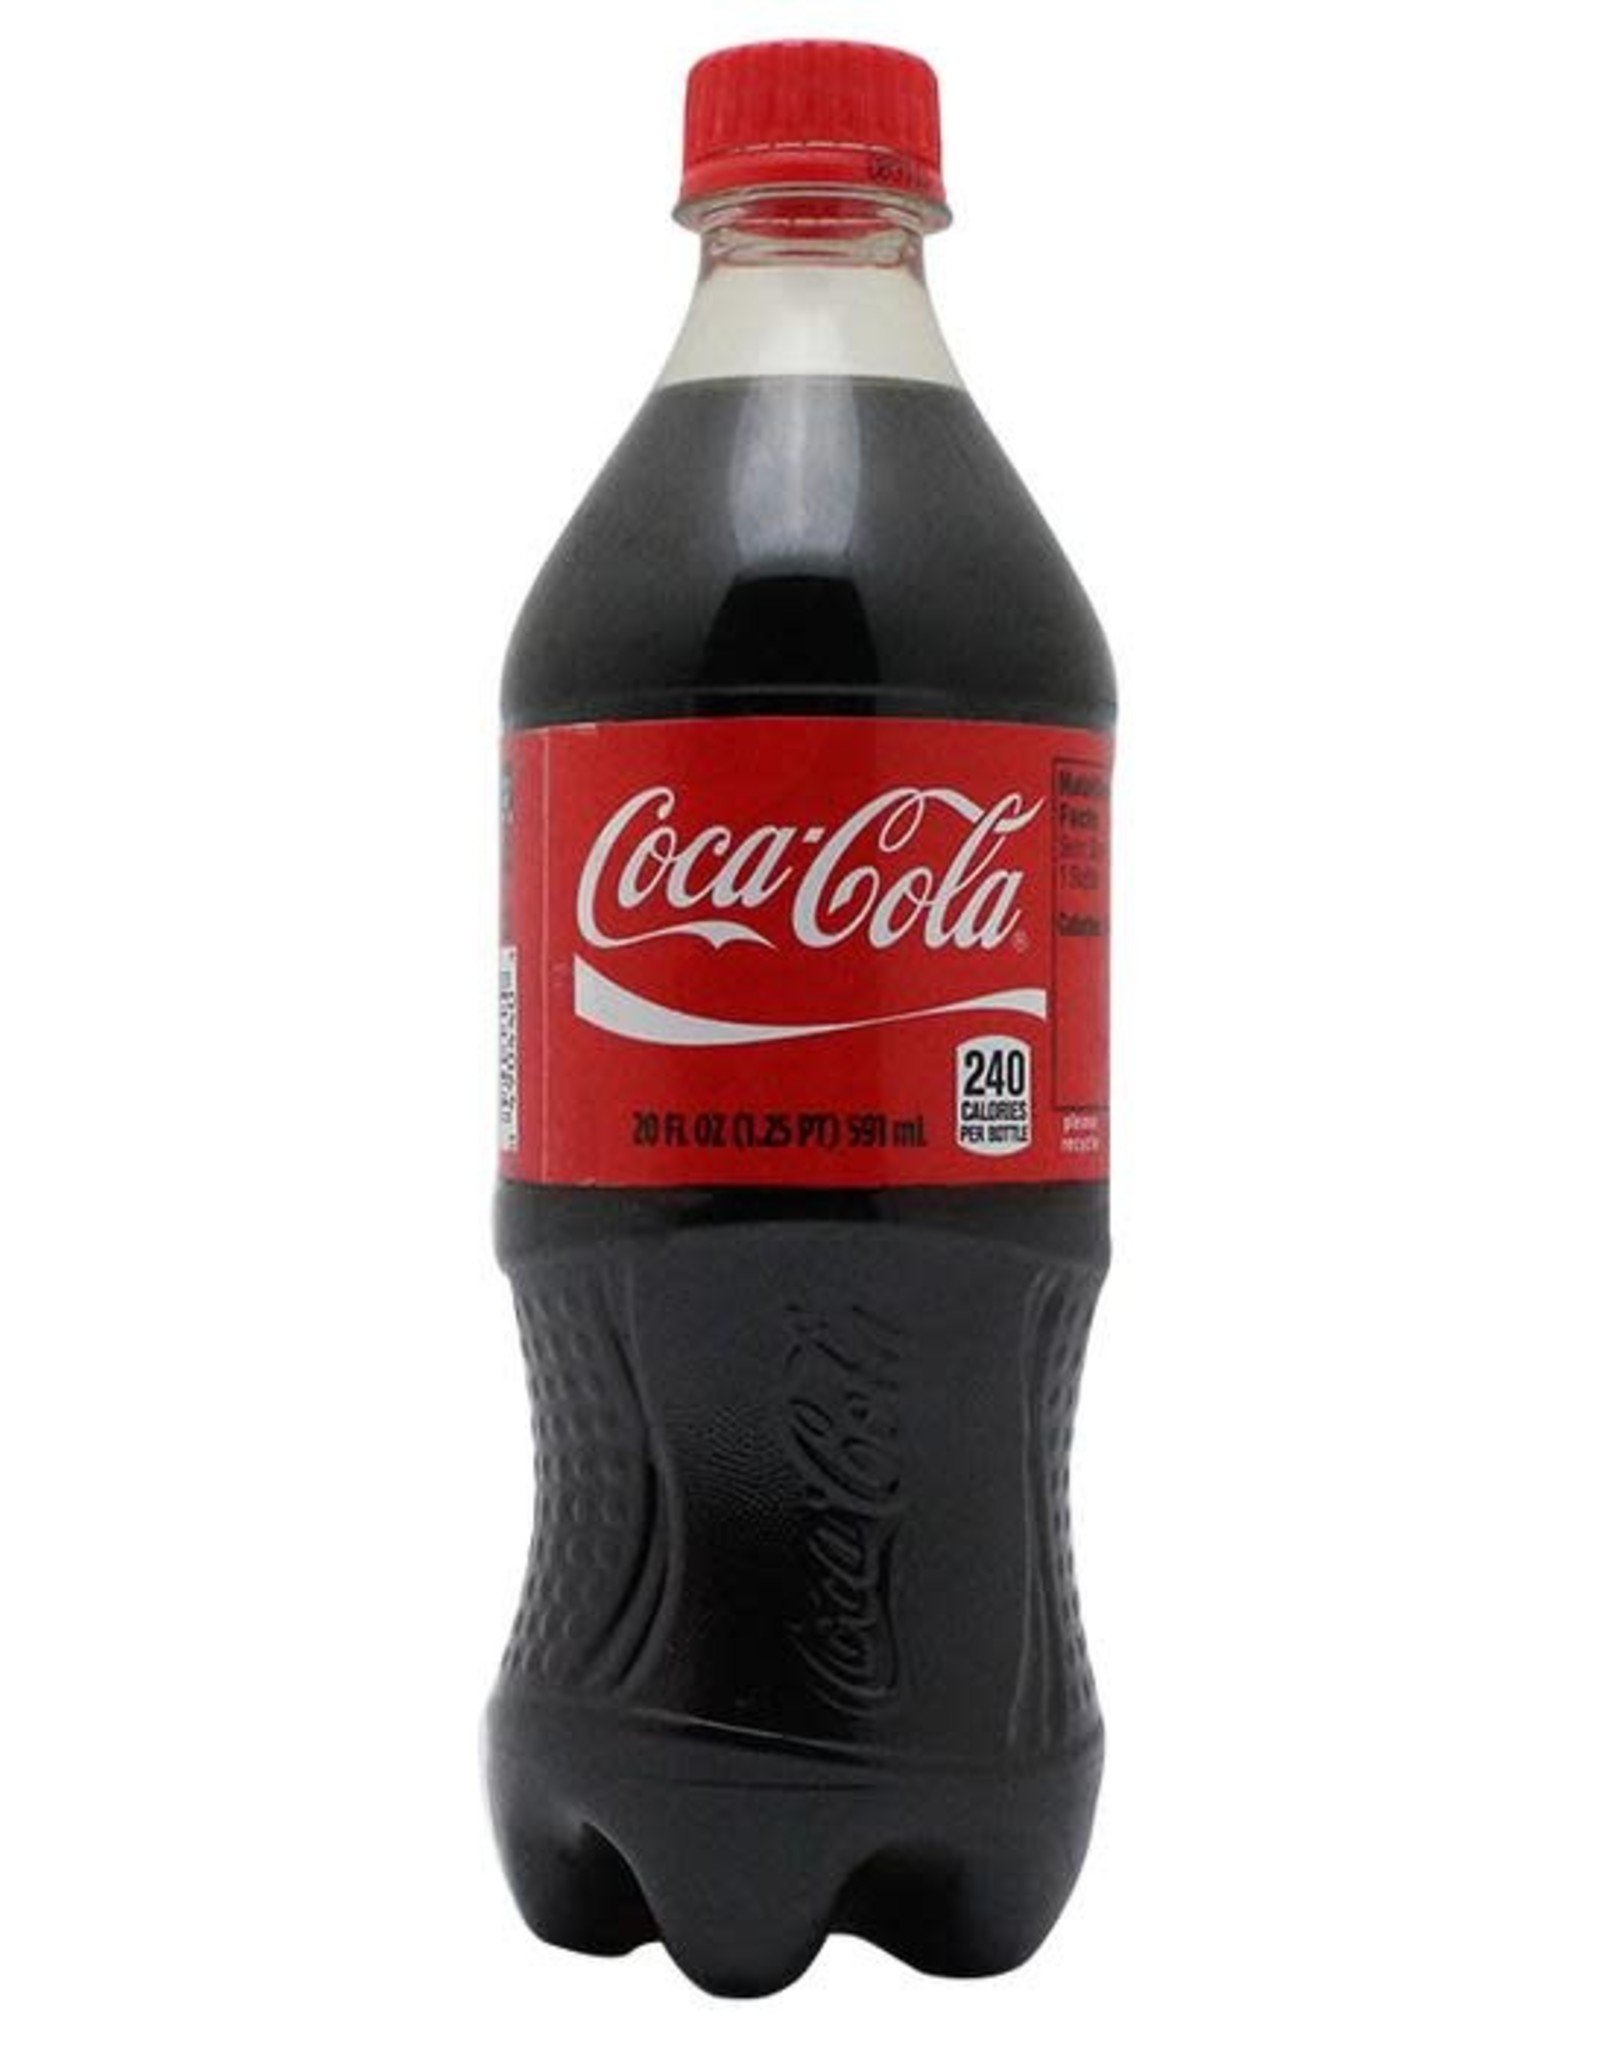 Coke Coca Cola Bottle - The Hut Liquor Store